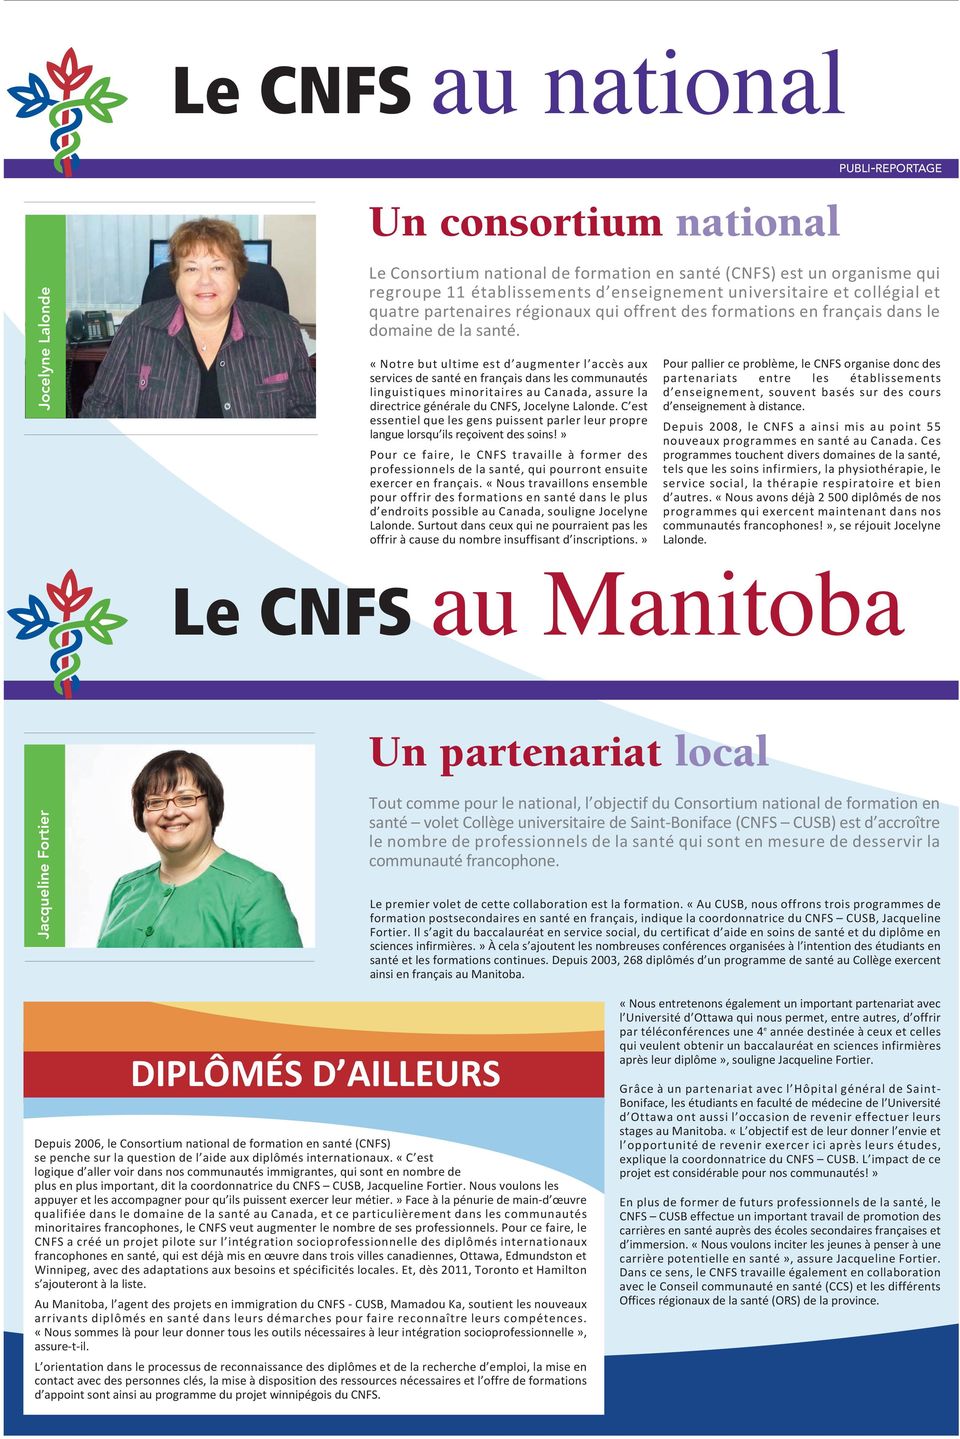 «Notre but ultime est d augmenter l accès aux services de santé en français dans les communautés linguistiques minoritaires au Canada, assure la directrice générale du CNFS, Jocelyne Lalonde.